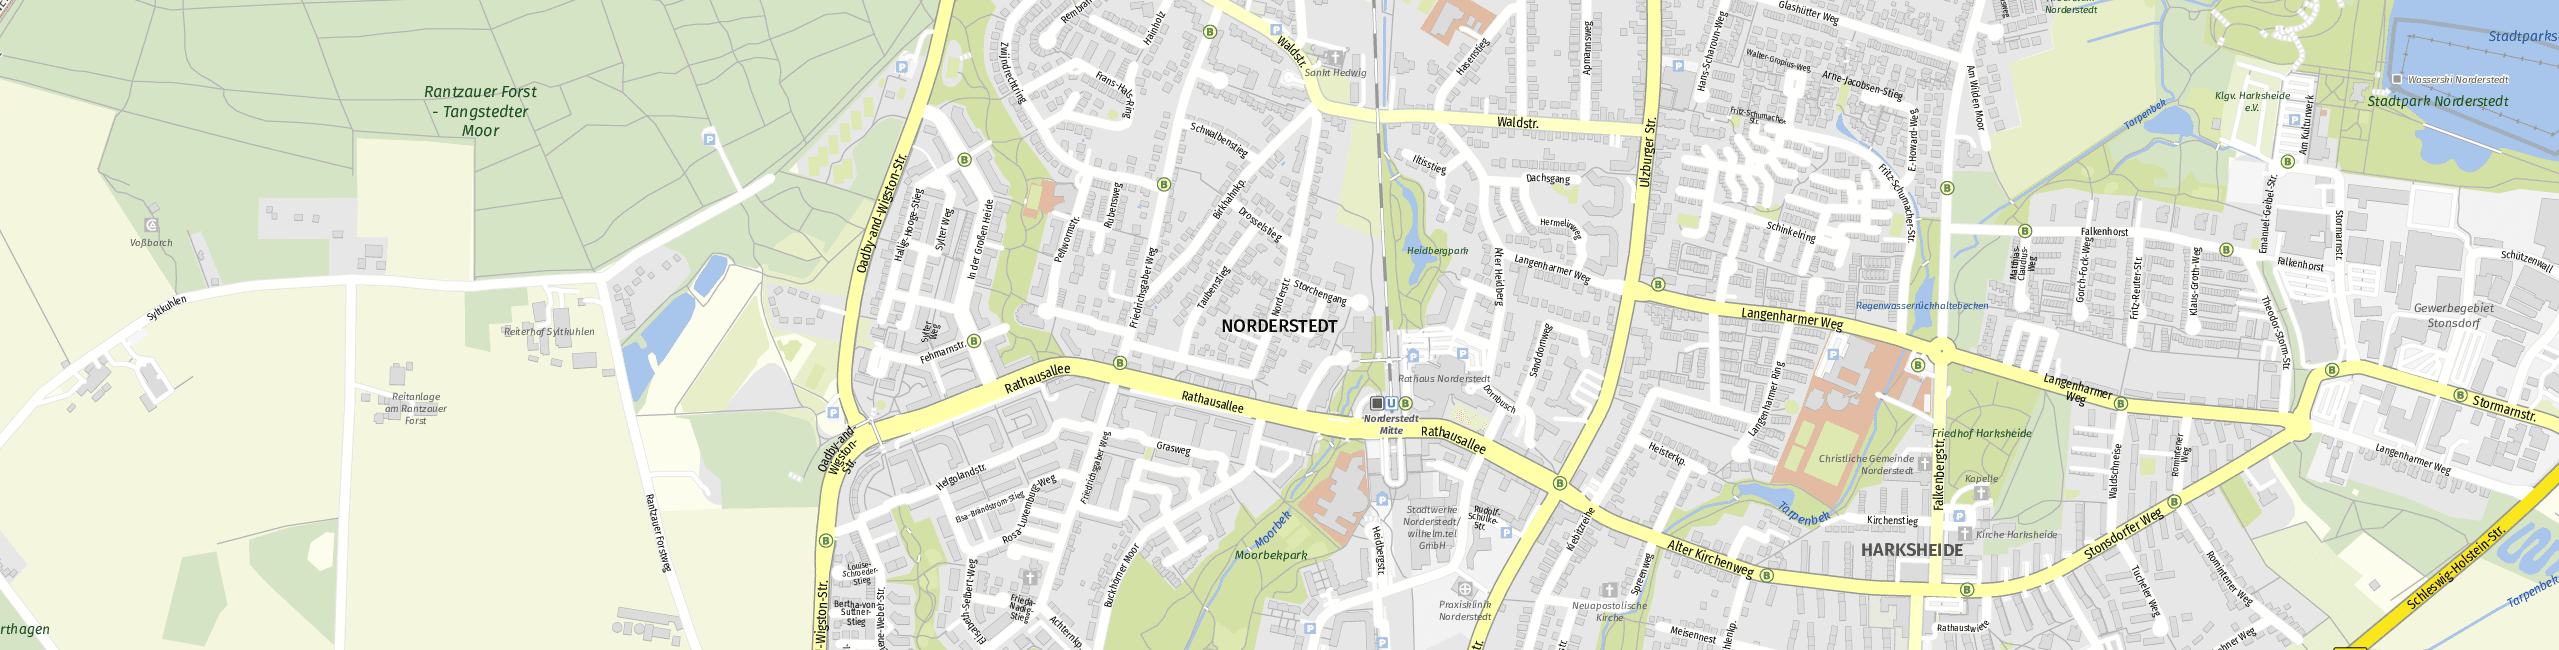 Stadtplan Norderstedt zum Downloaden.